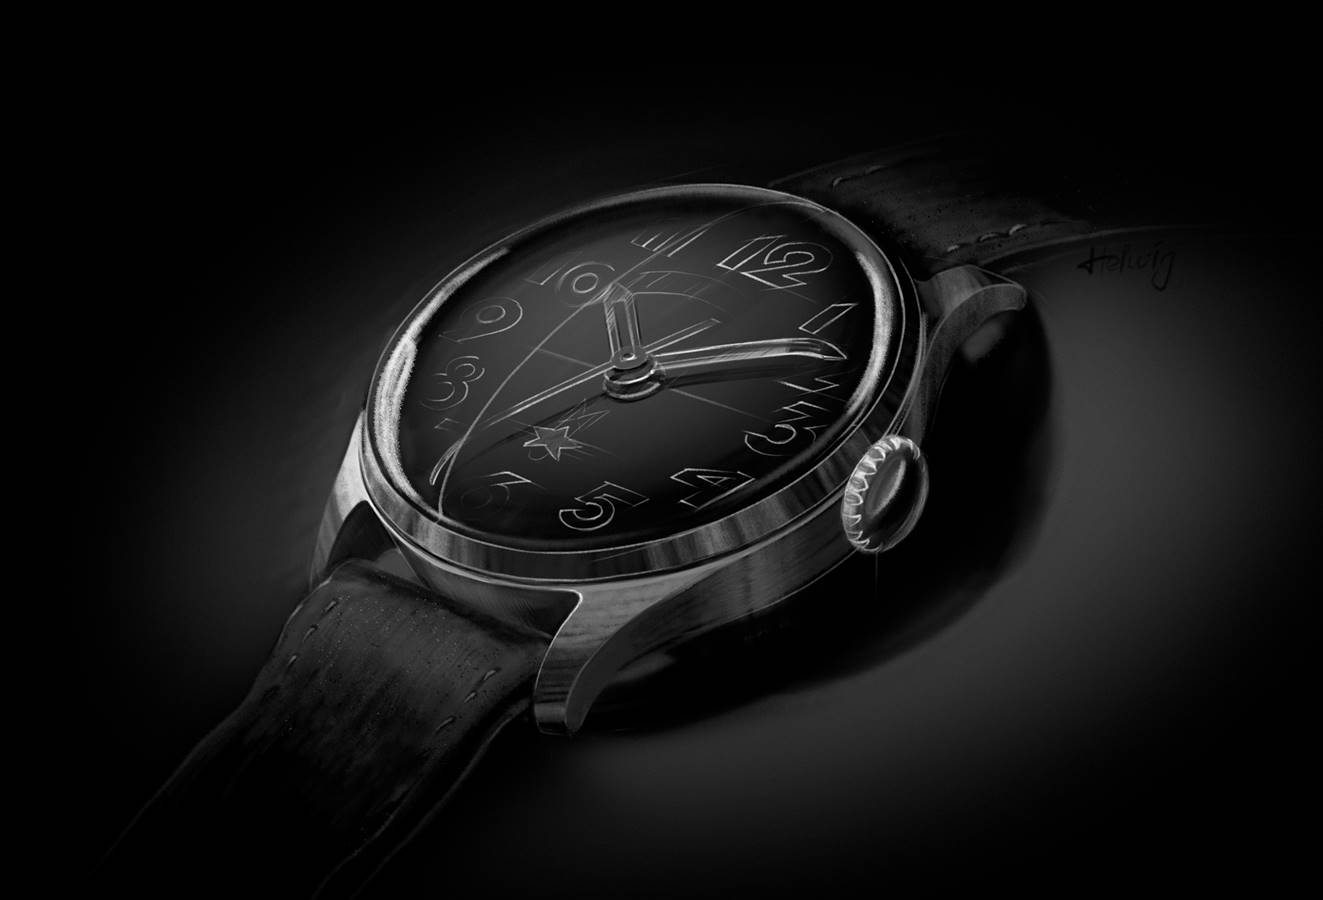 Sturmanskie Gagarin Heritage Collection – inspirowany pierwszym zegarkiem w kosmosie